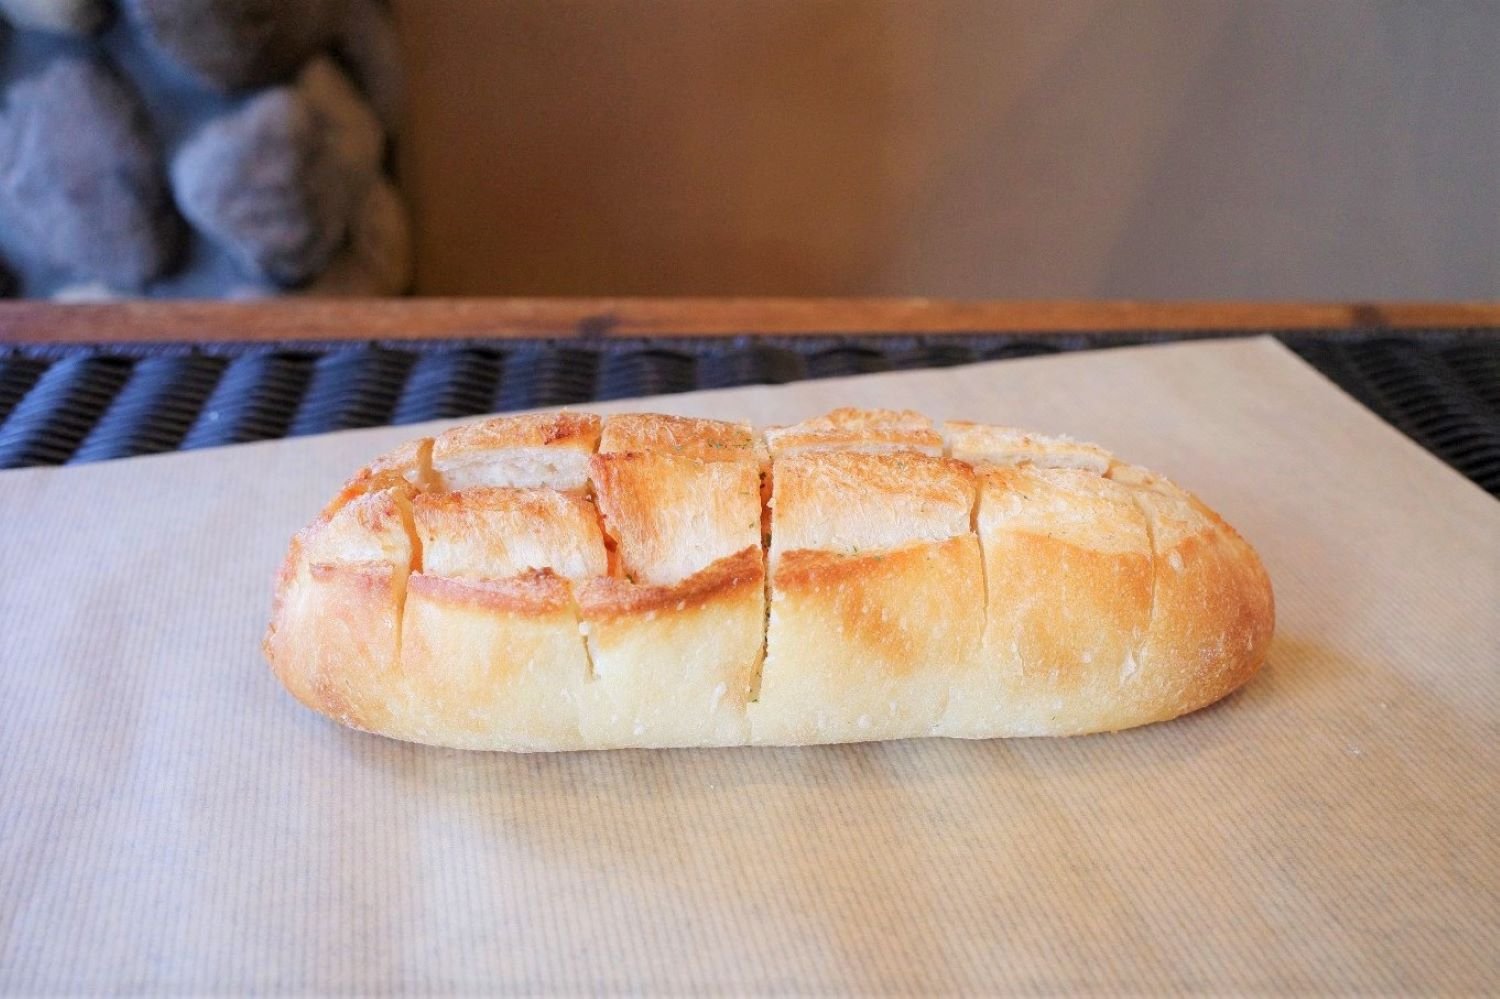 明太フランスは1本344円。太め、中サイズのフランスパンながらペロリ。